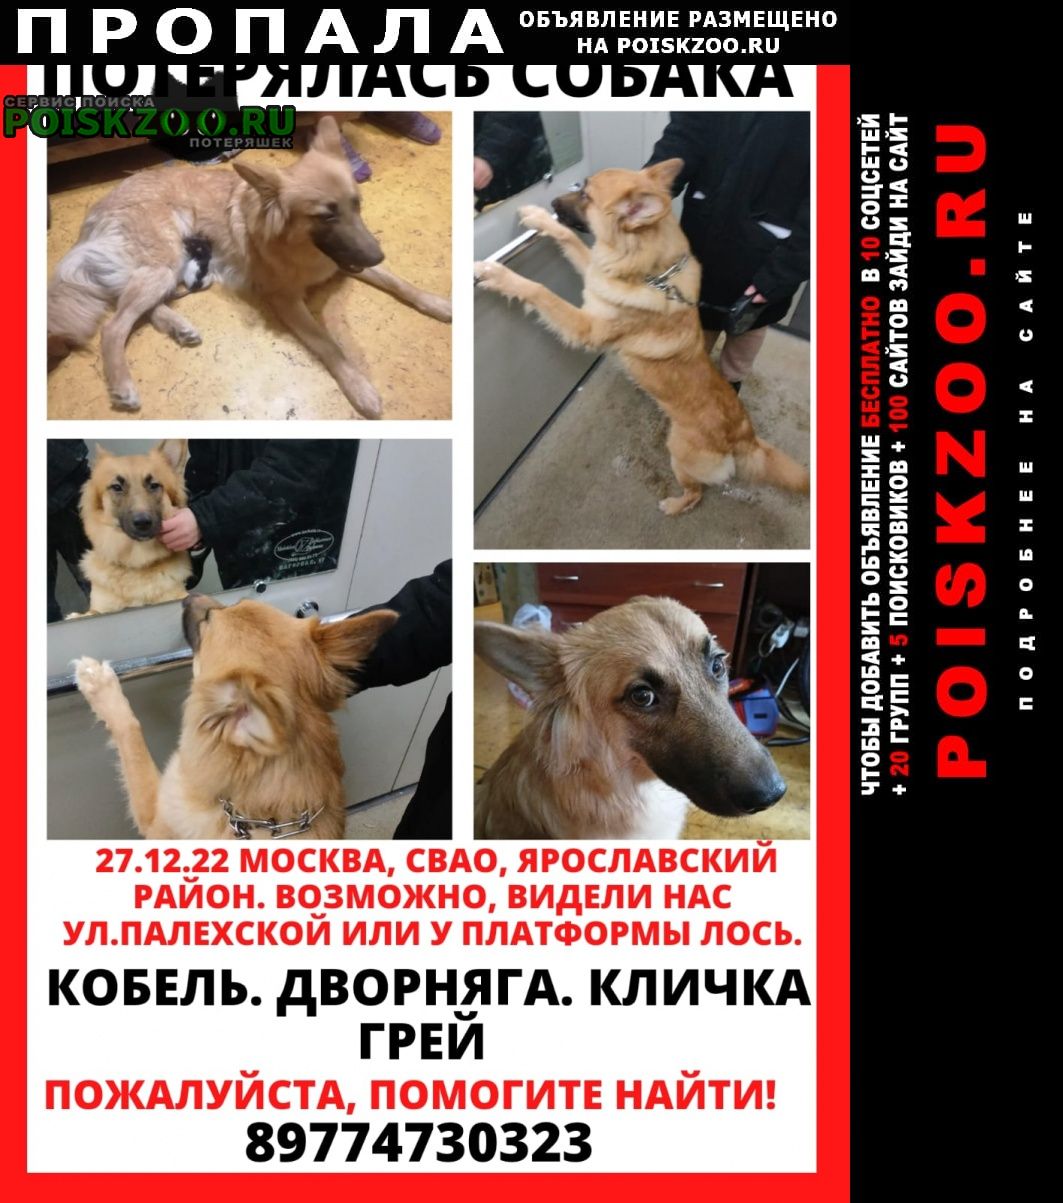 Пропала собака кобель помогите найти, пожалуйста Москва